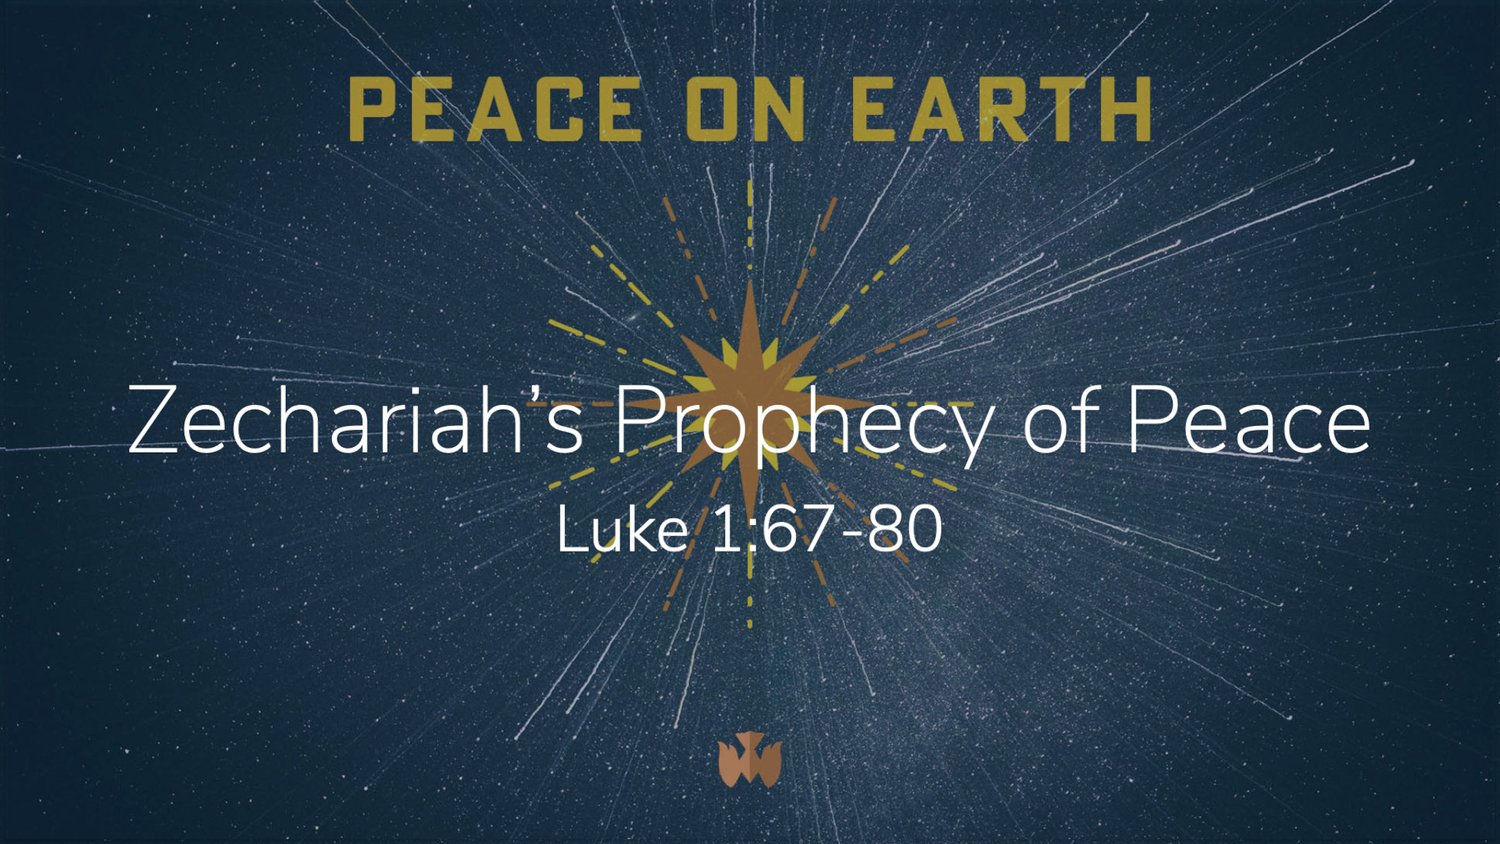 Luke 1:67-80 || Zechariah's Prophecy of Peace